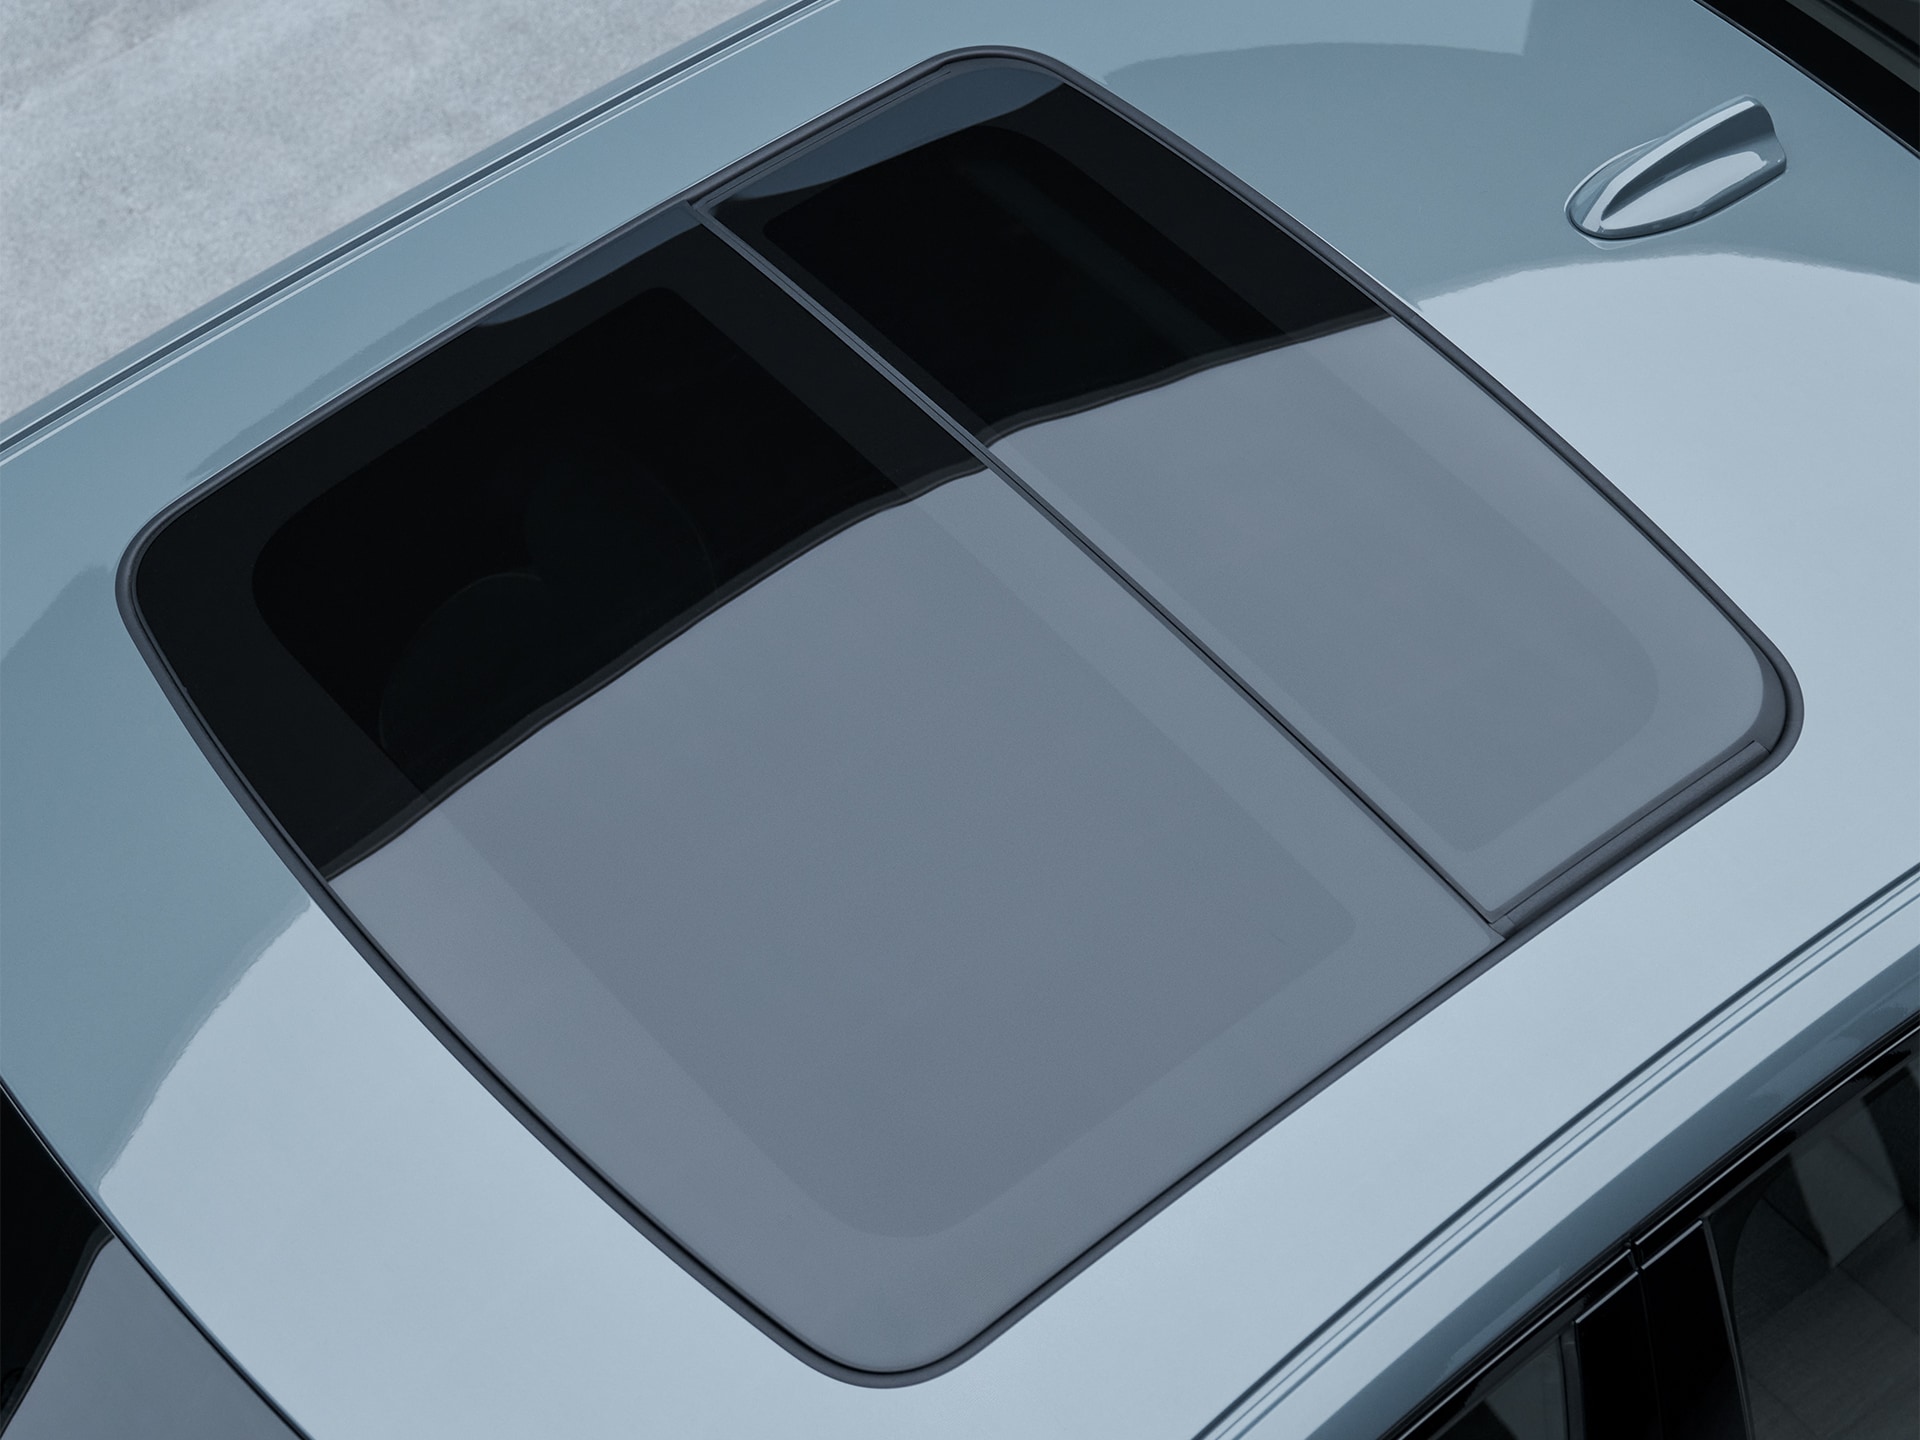 Teto panorâmico num Sedan Volvo S60.